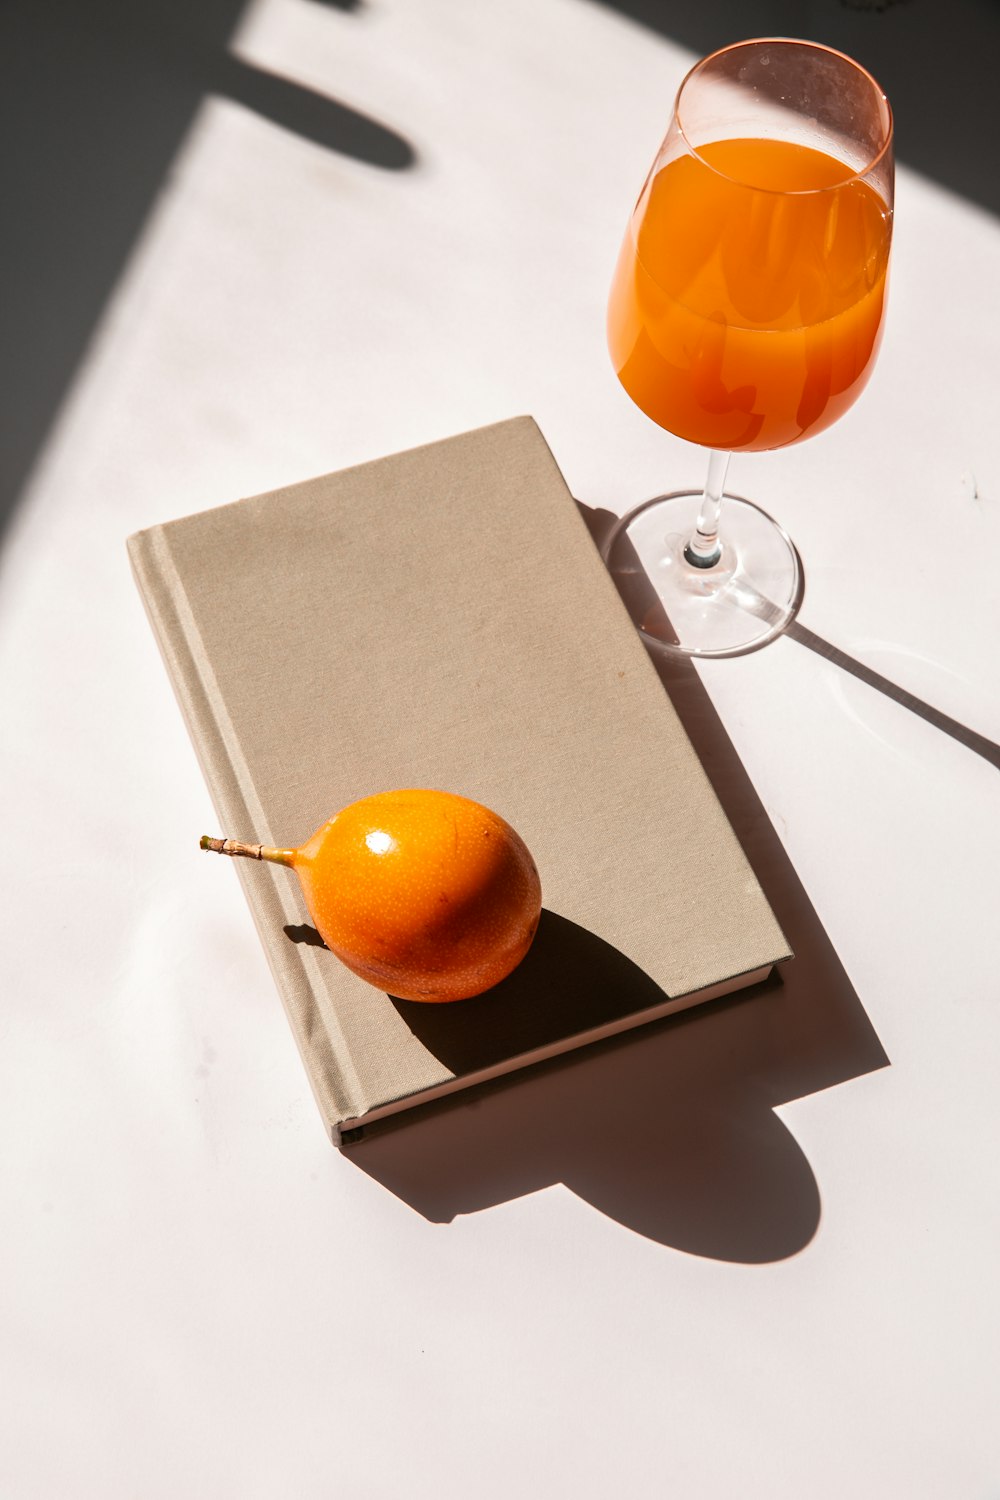 orange fruit on brown box